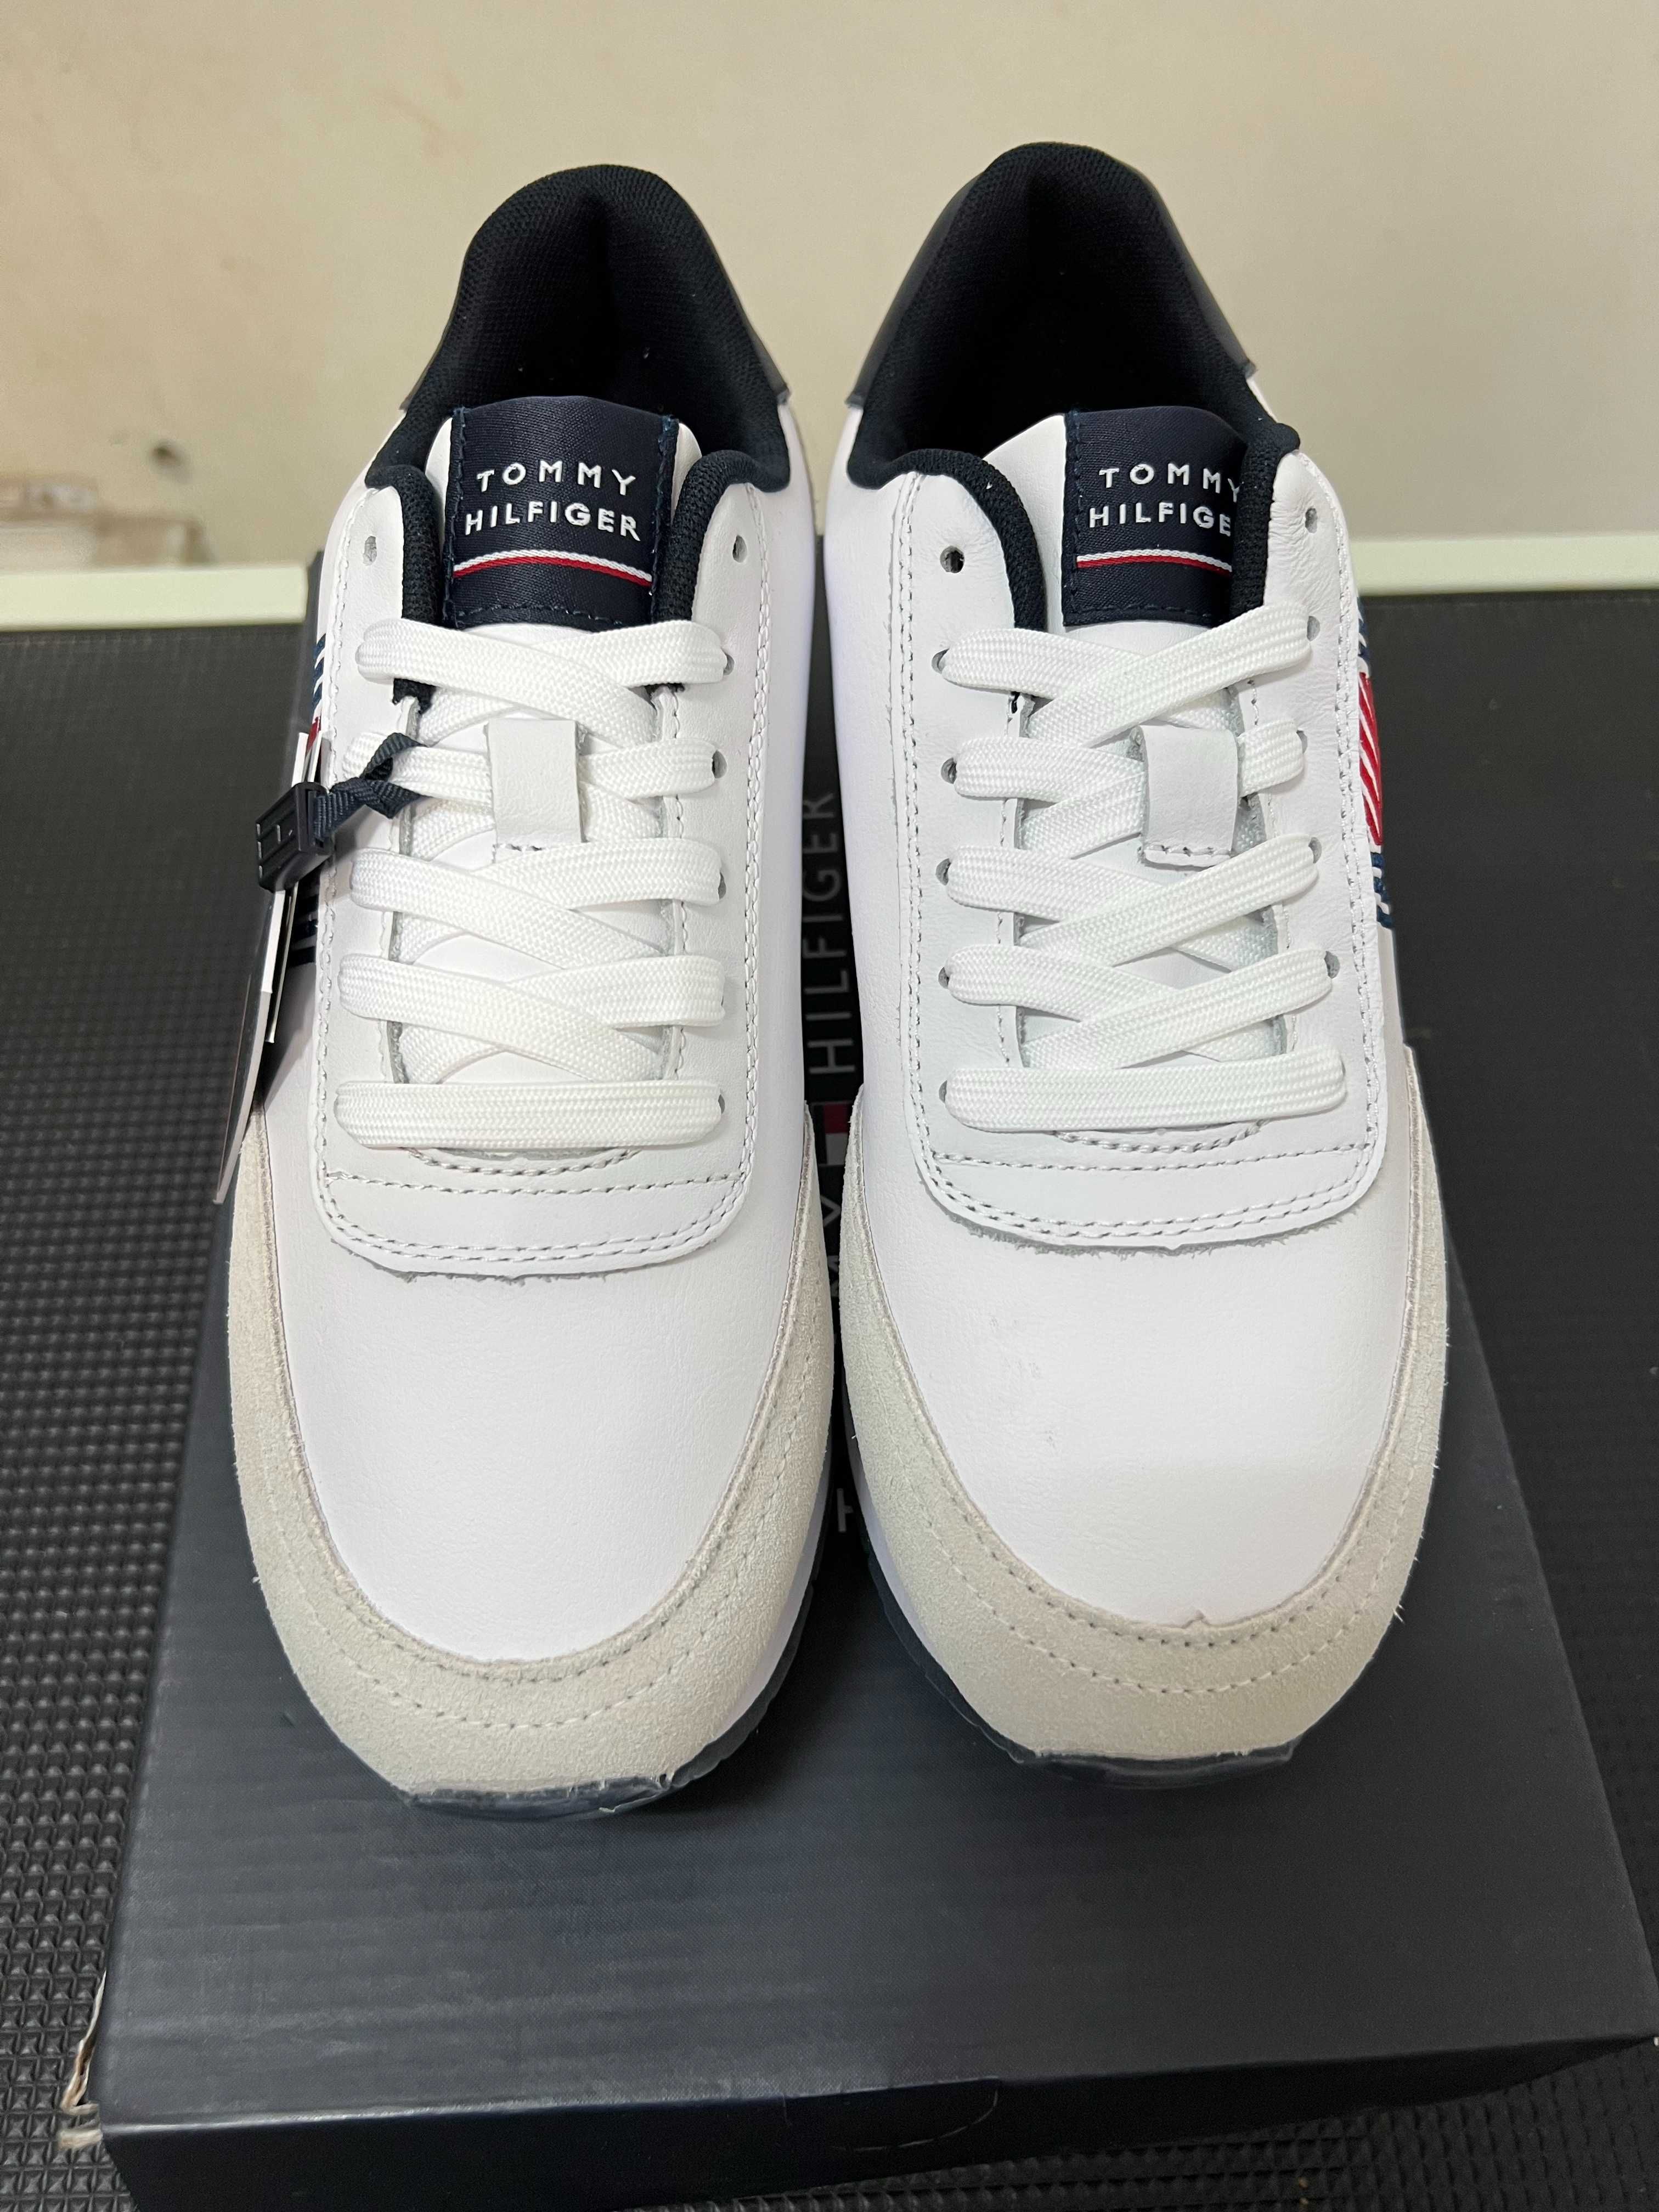 Adidasi / sneakers Tommy Hilfiger, mărime 40, preț 260 lei